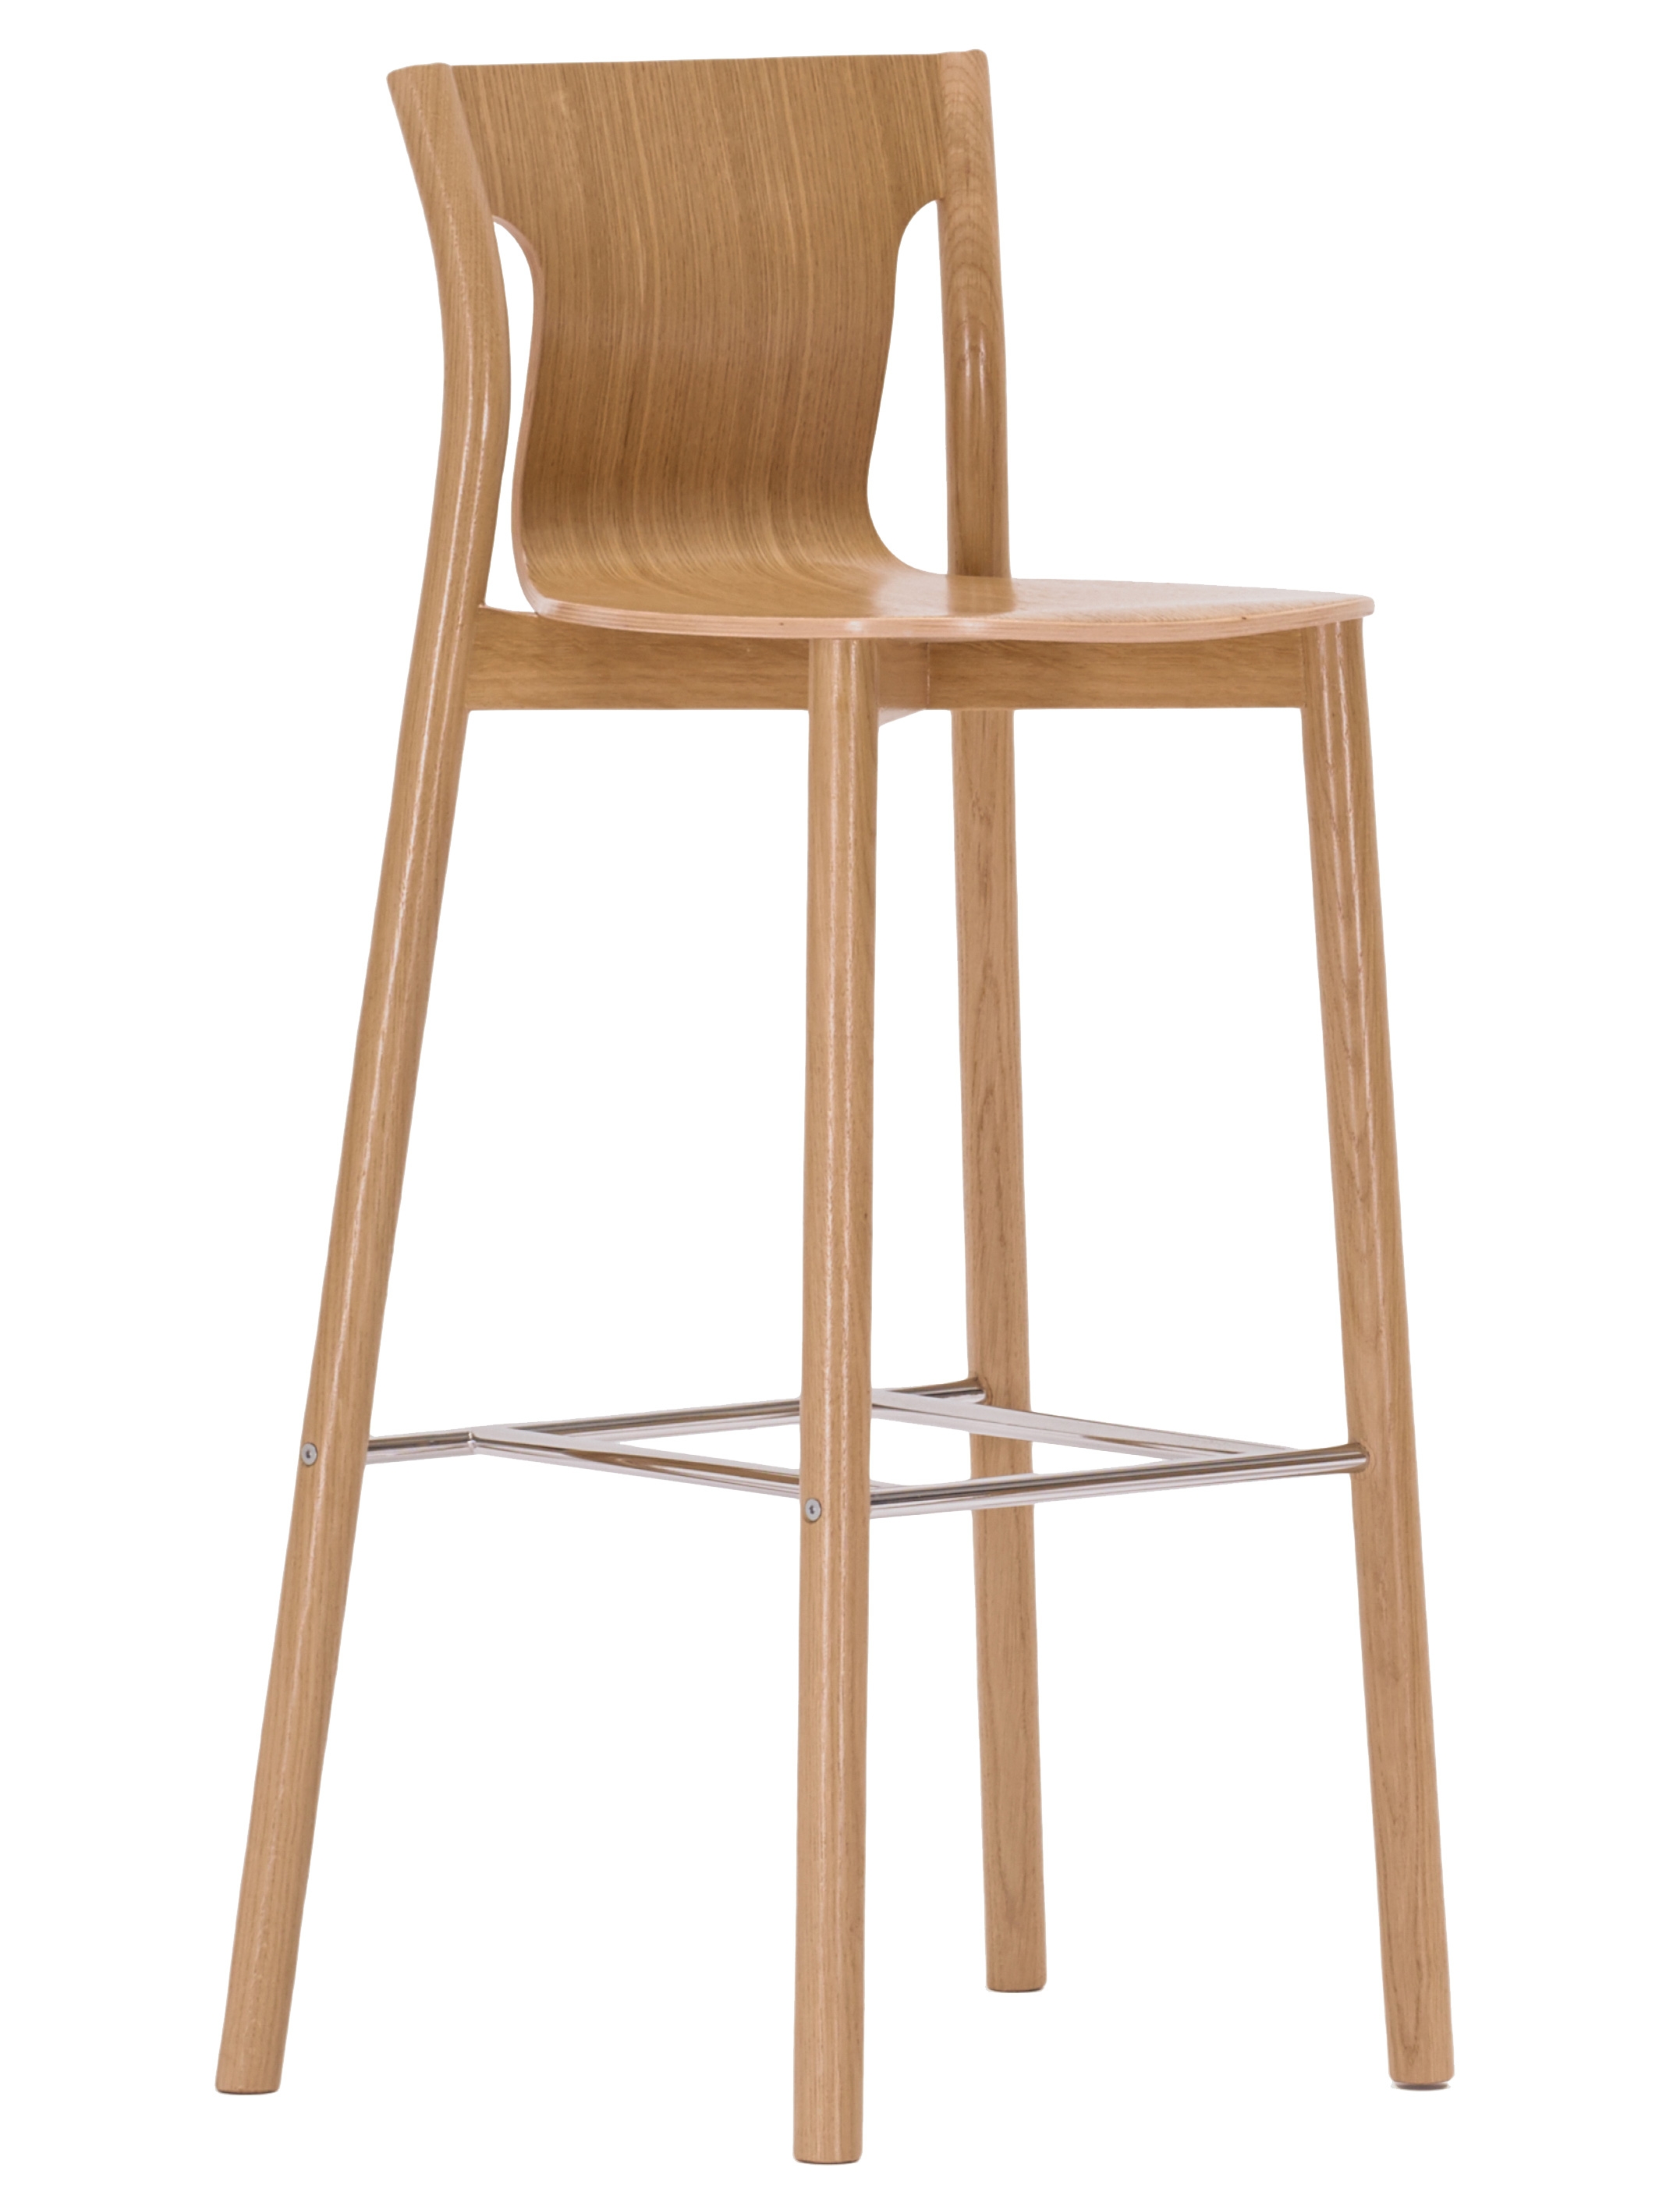 Chaise haute en bois